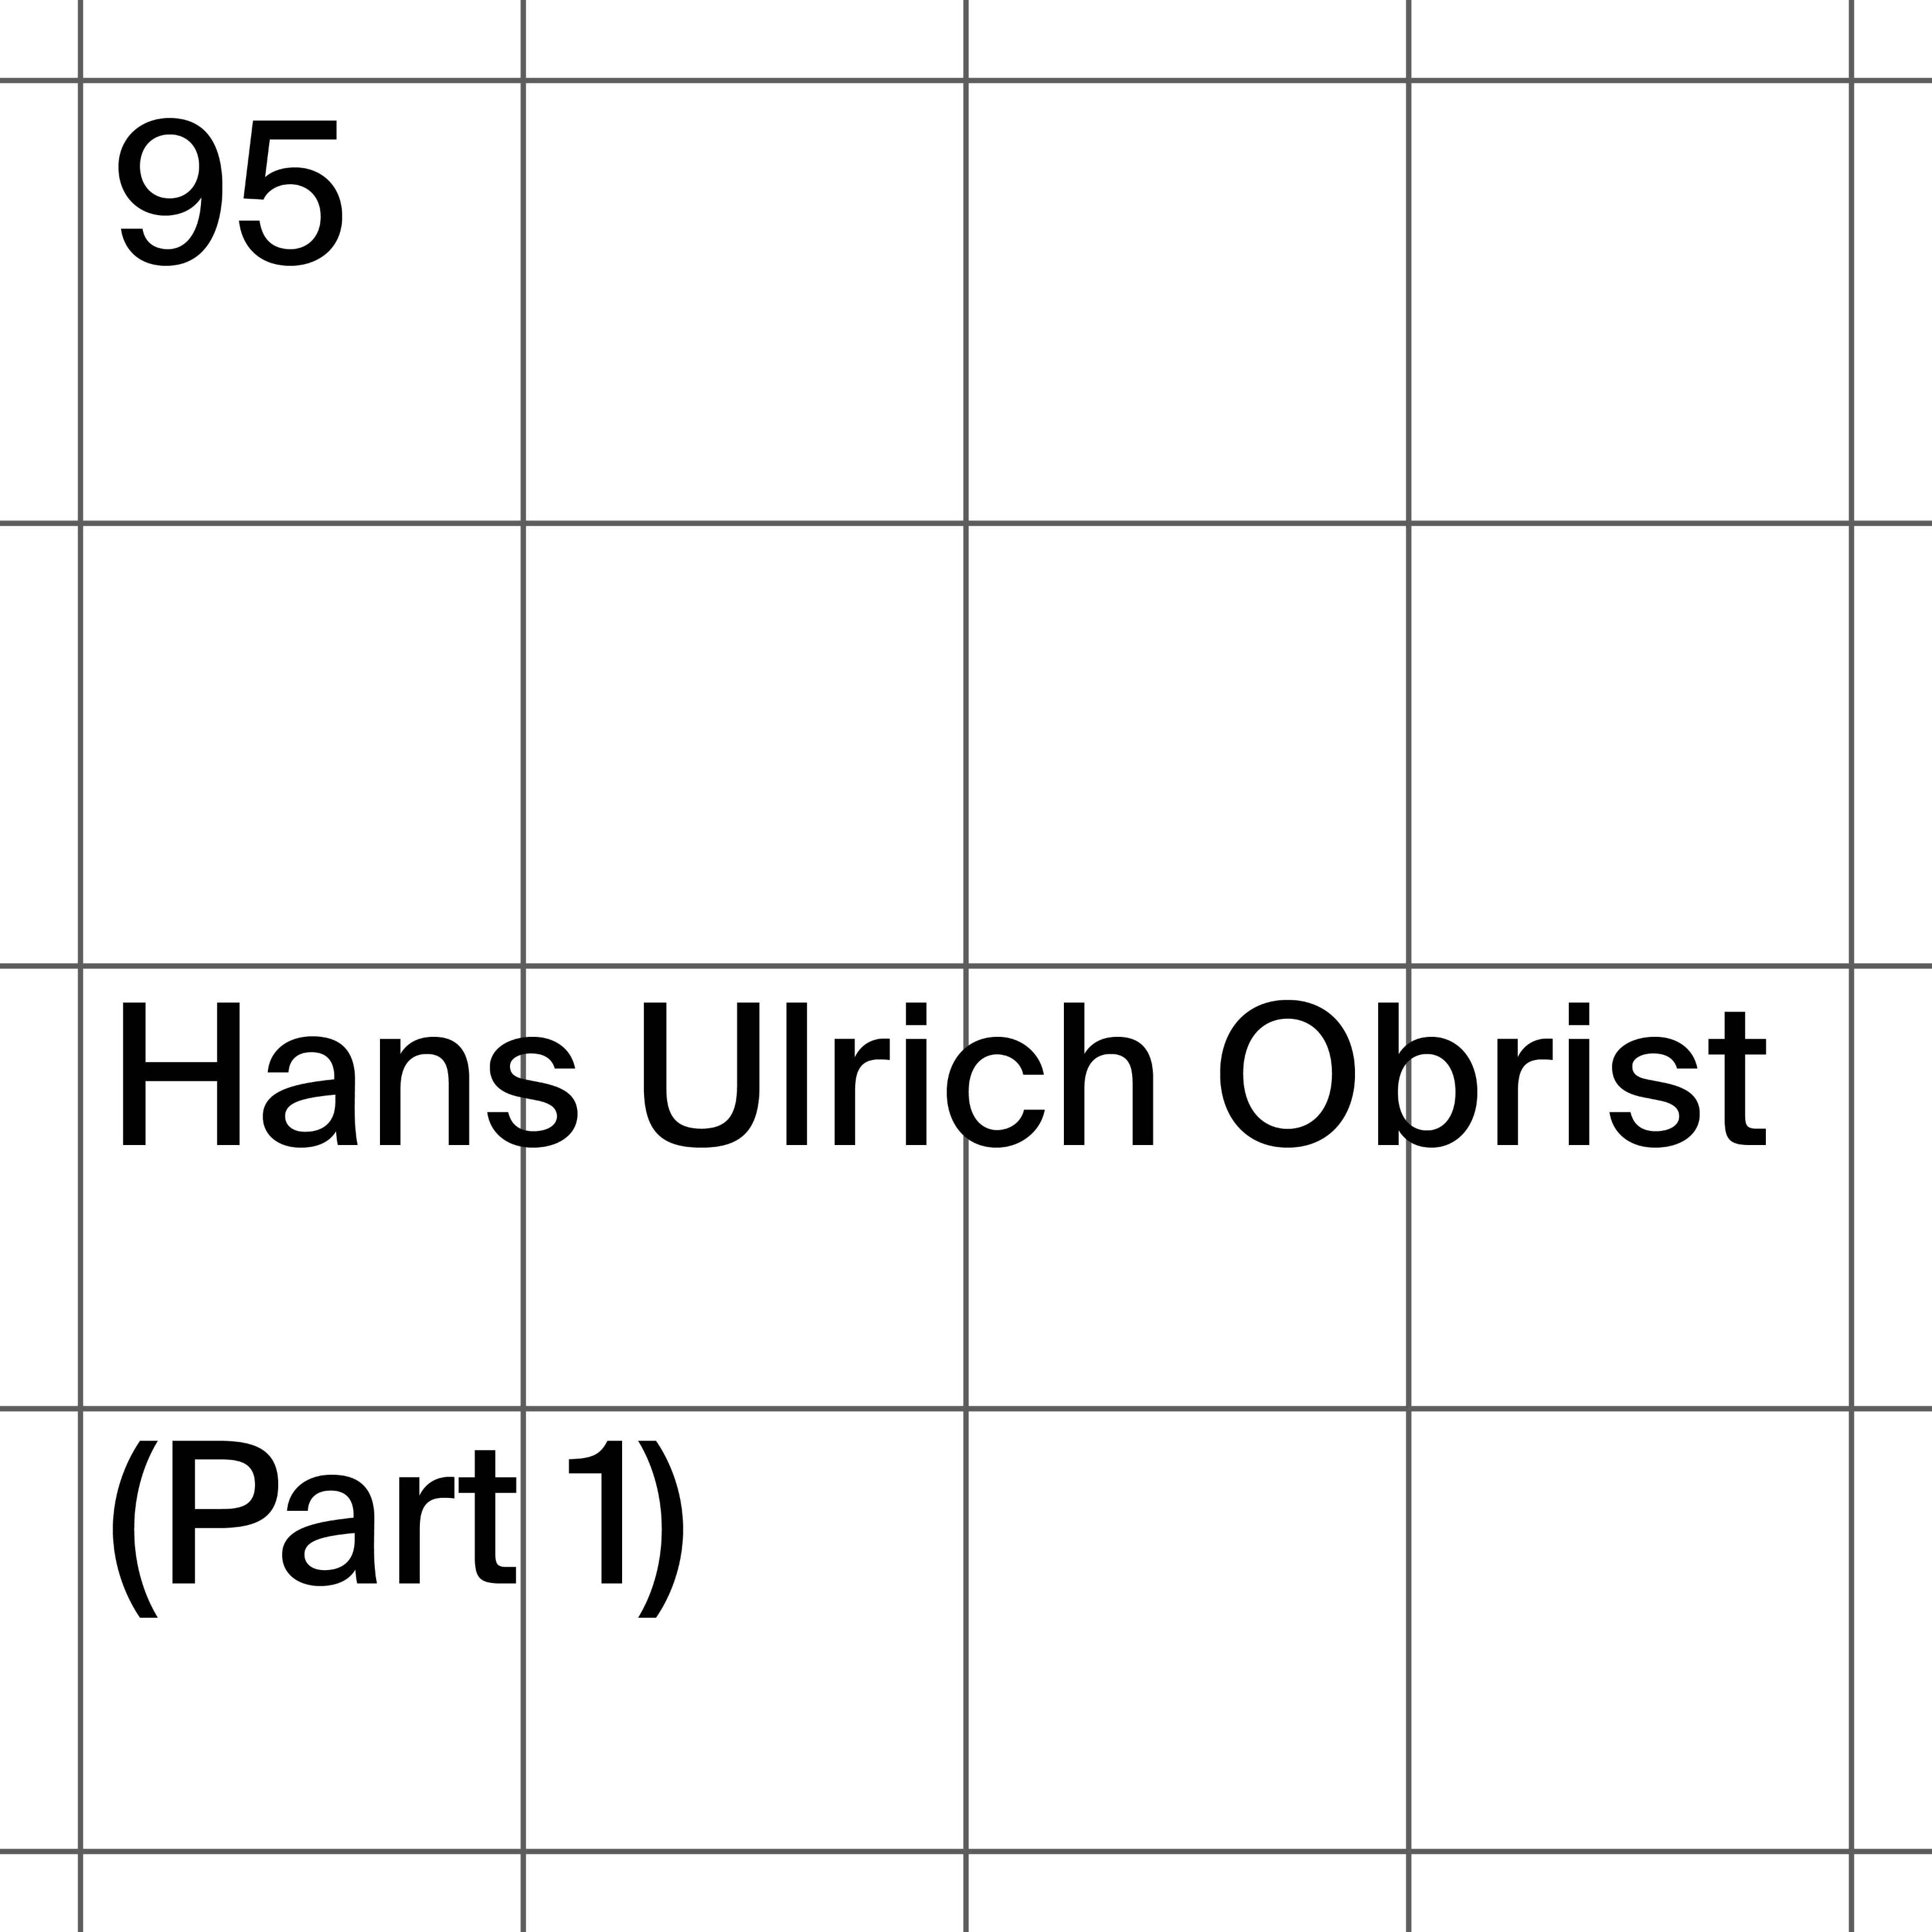 95: Hans Ulrich Obrist (Part 1)